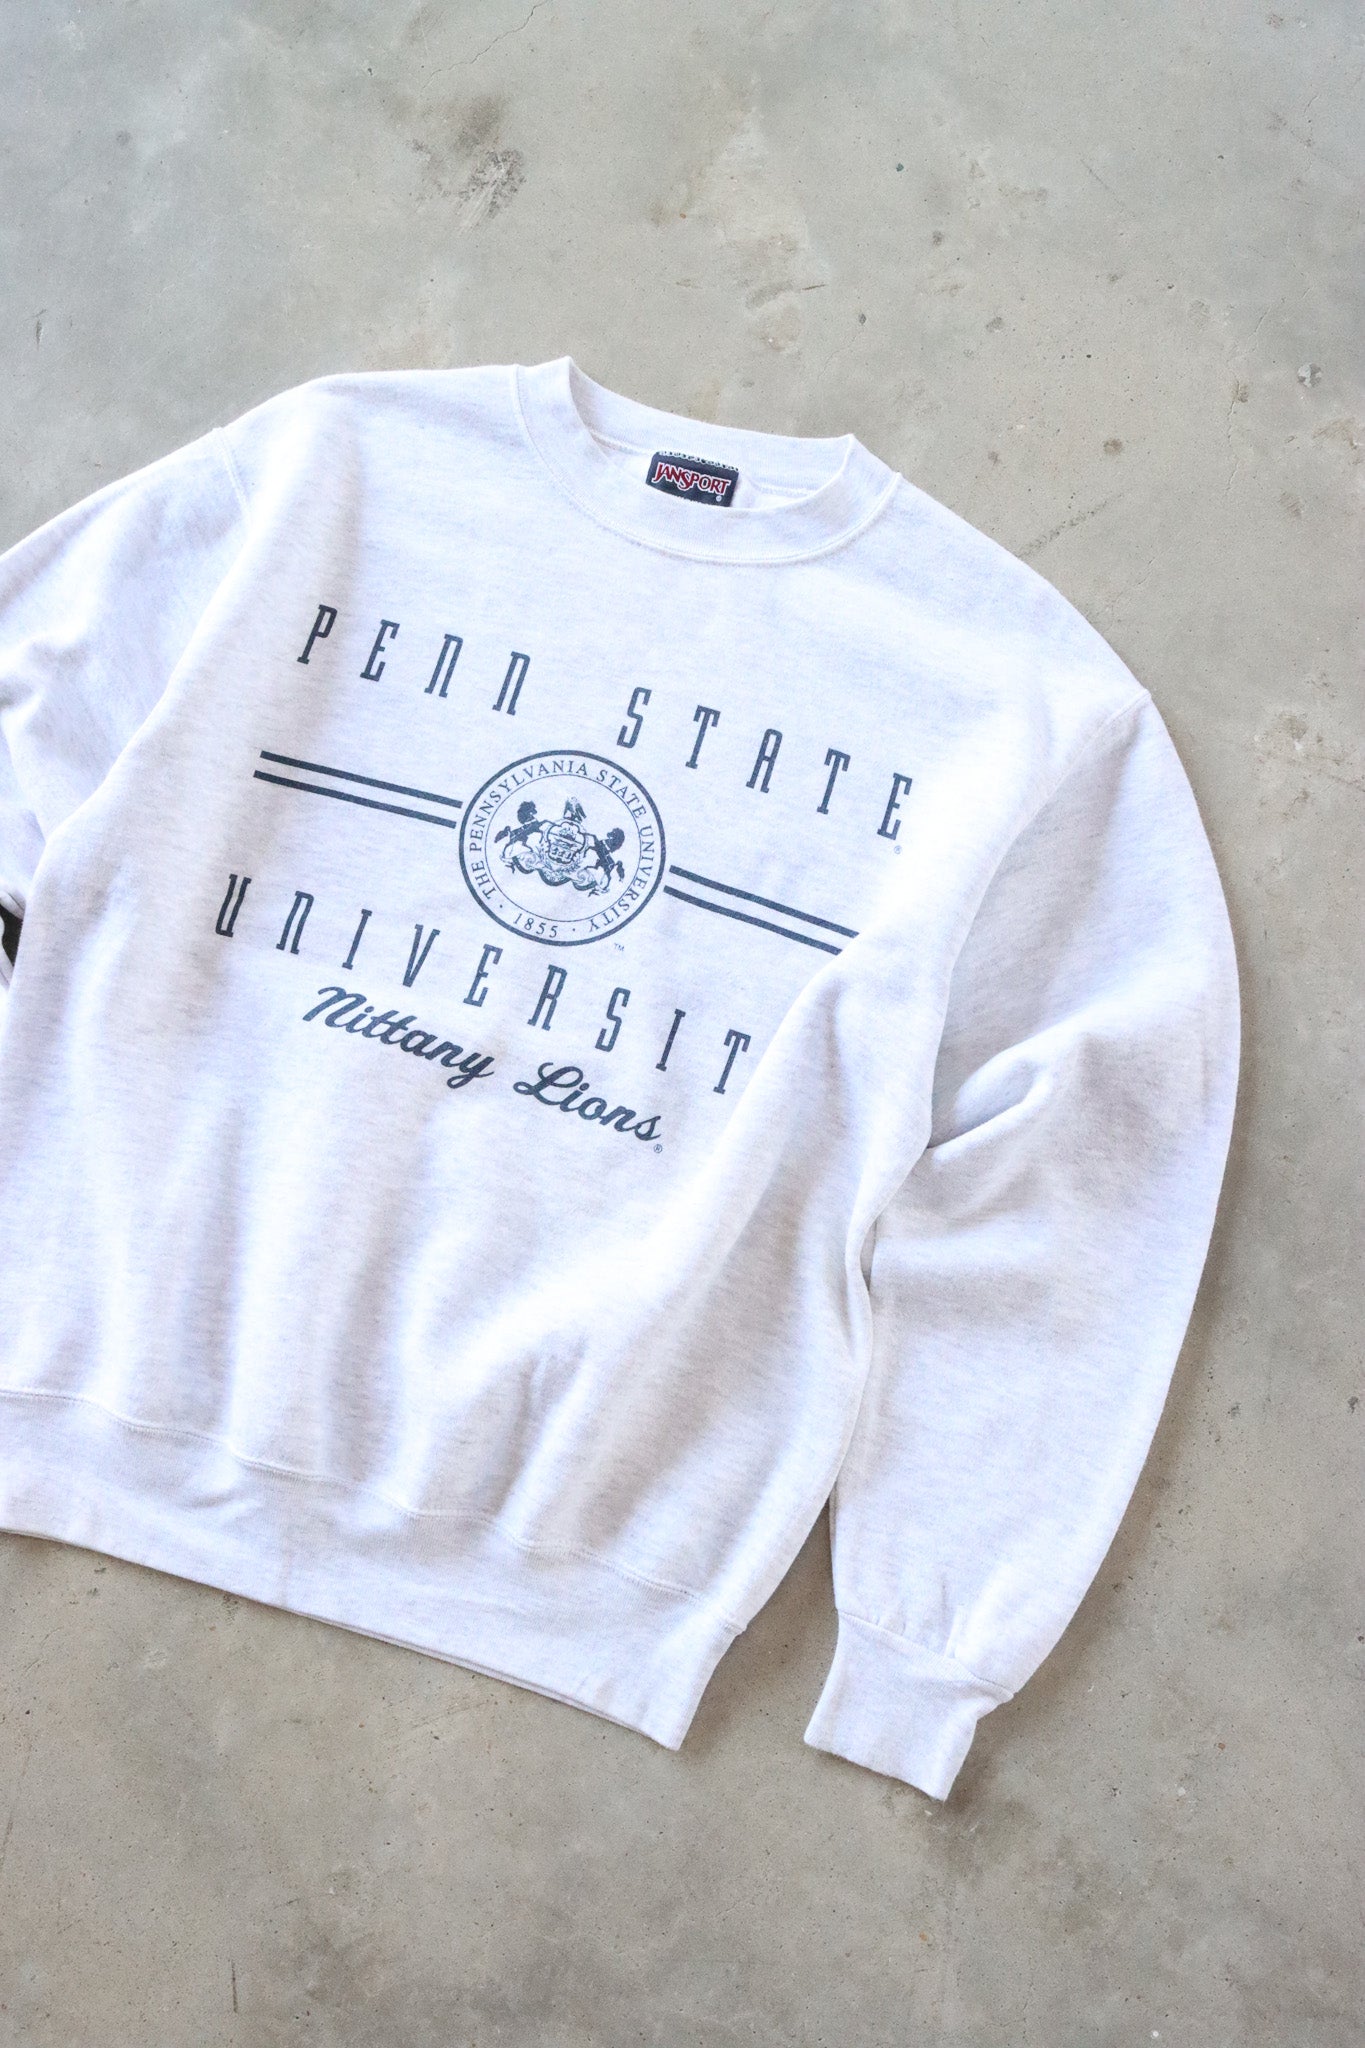 Vintage Penn State Sweater Medium